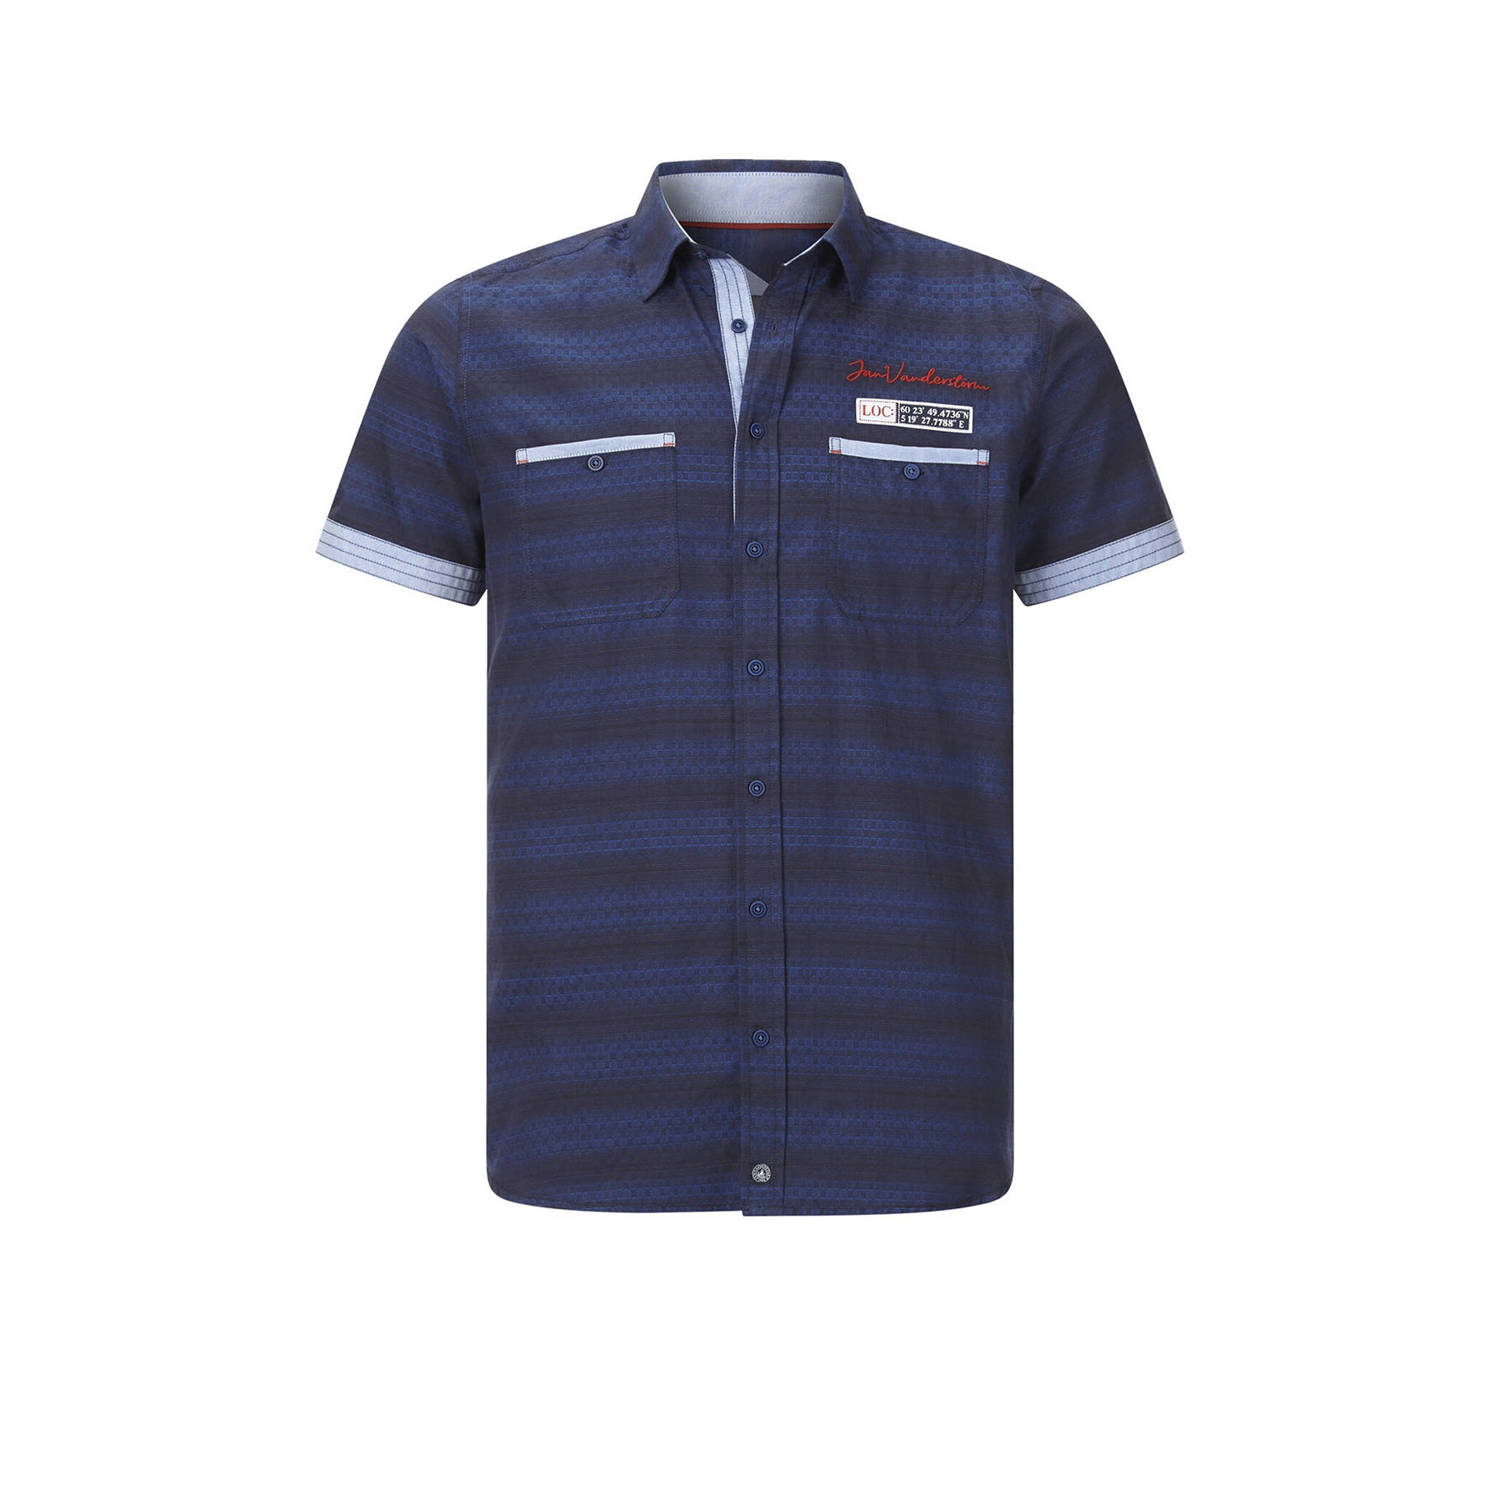 Jan Vanderstorm +FIT Collectie regular fit overhemd LEIKVARD Plus Size met printopdruk donkerblauw